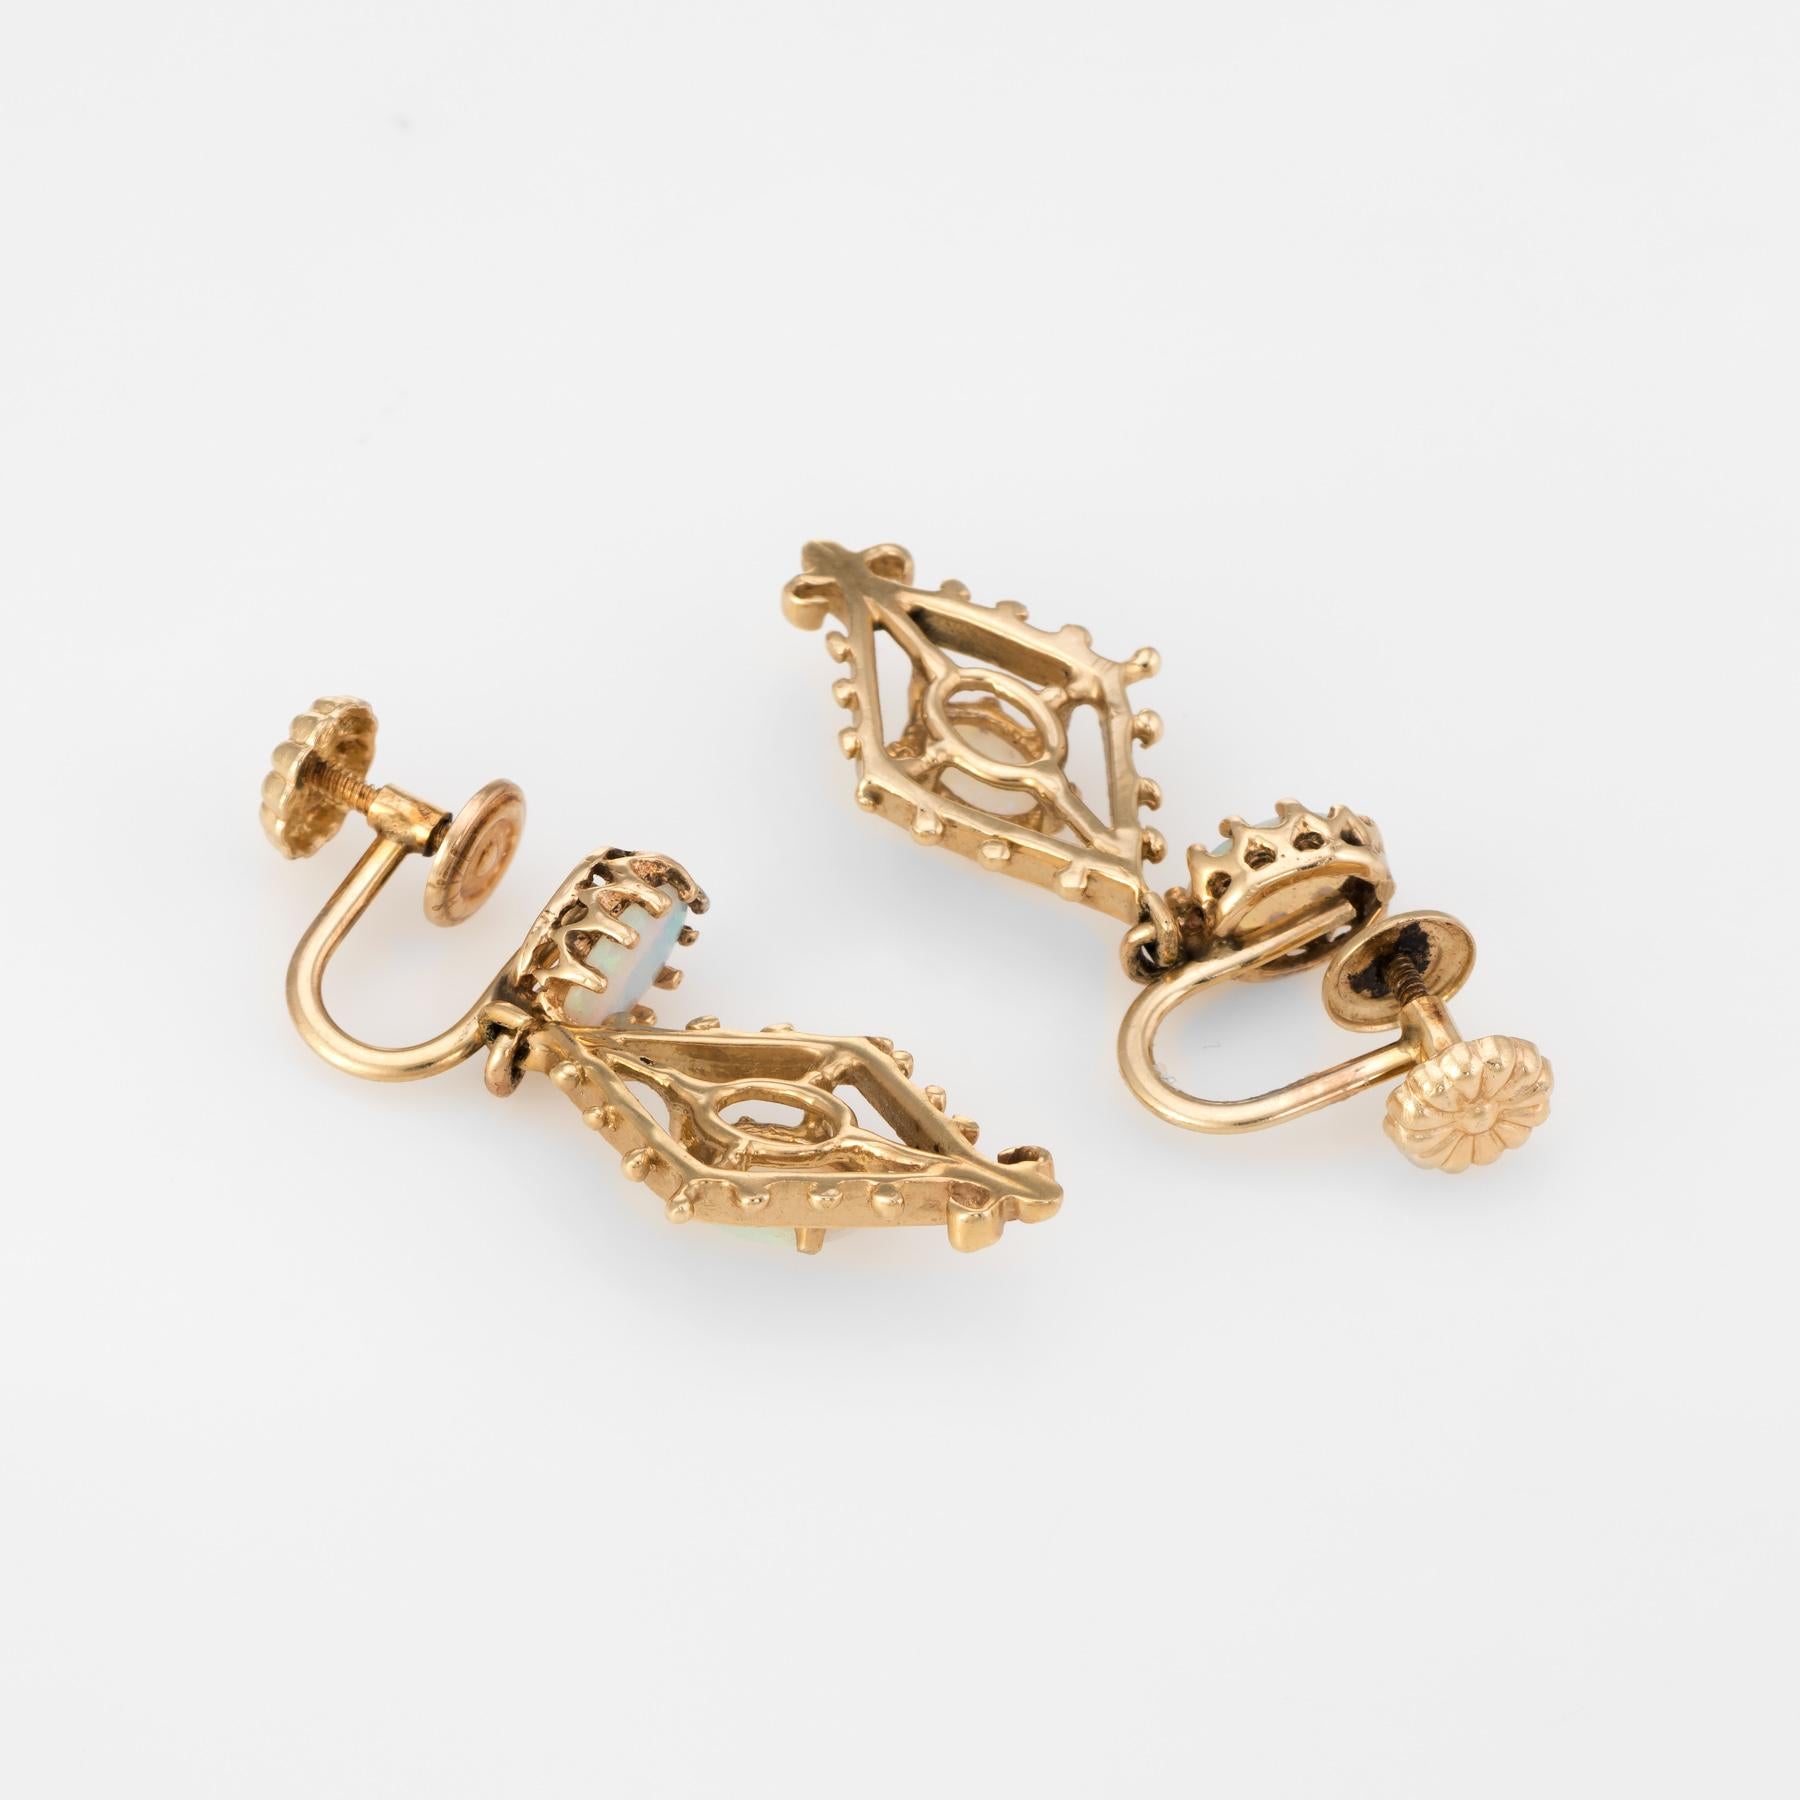 Opal Drop Earrings Vintage 14 Karat Gold Estate Fine Jewelry Screw Backings (Ovalschliff)